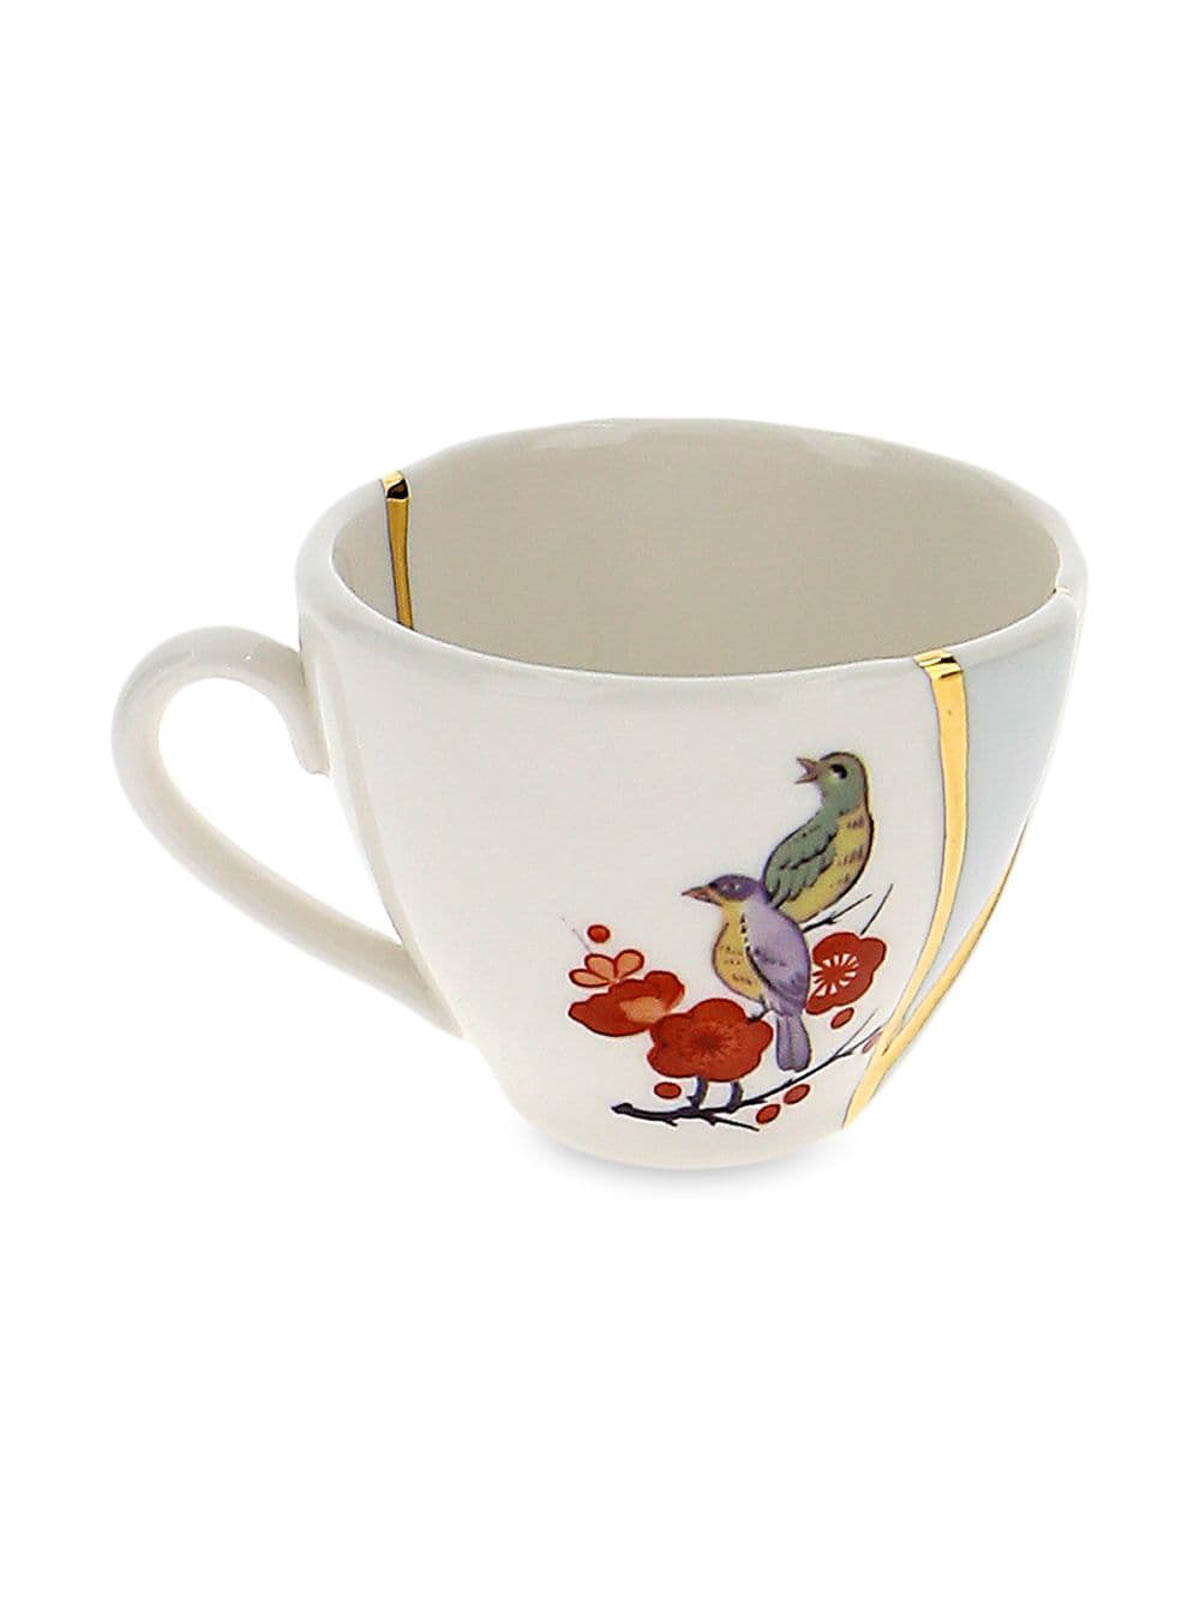 COFFEE CUP WITH SAUCER SELETTI KINTSUGI N 2 ART 09642 — LADUEMILA